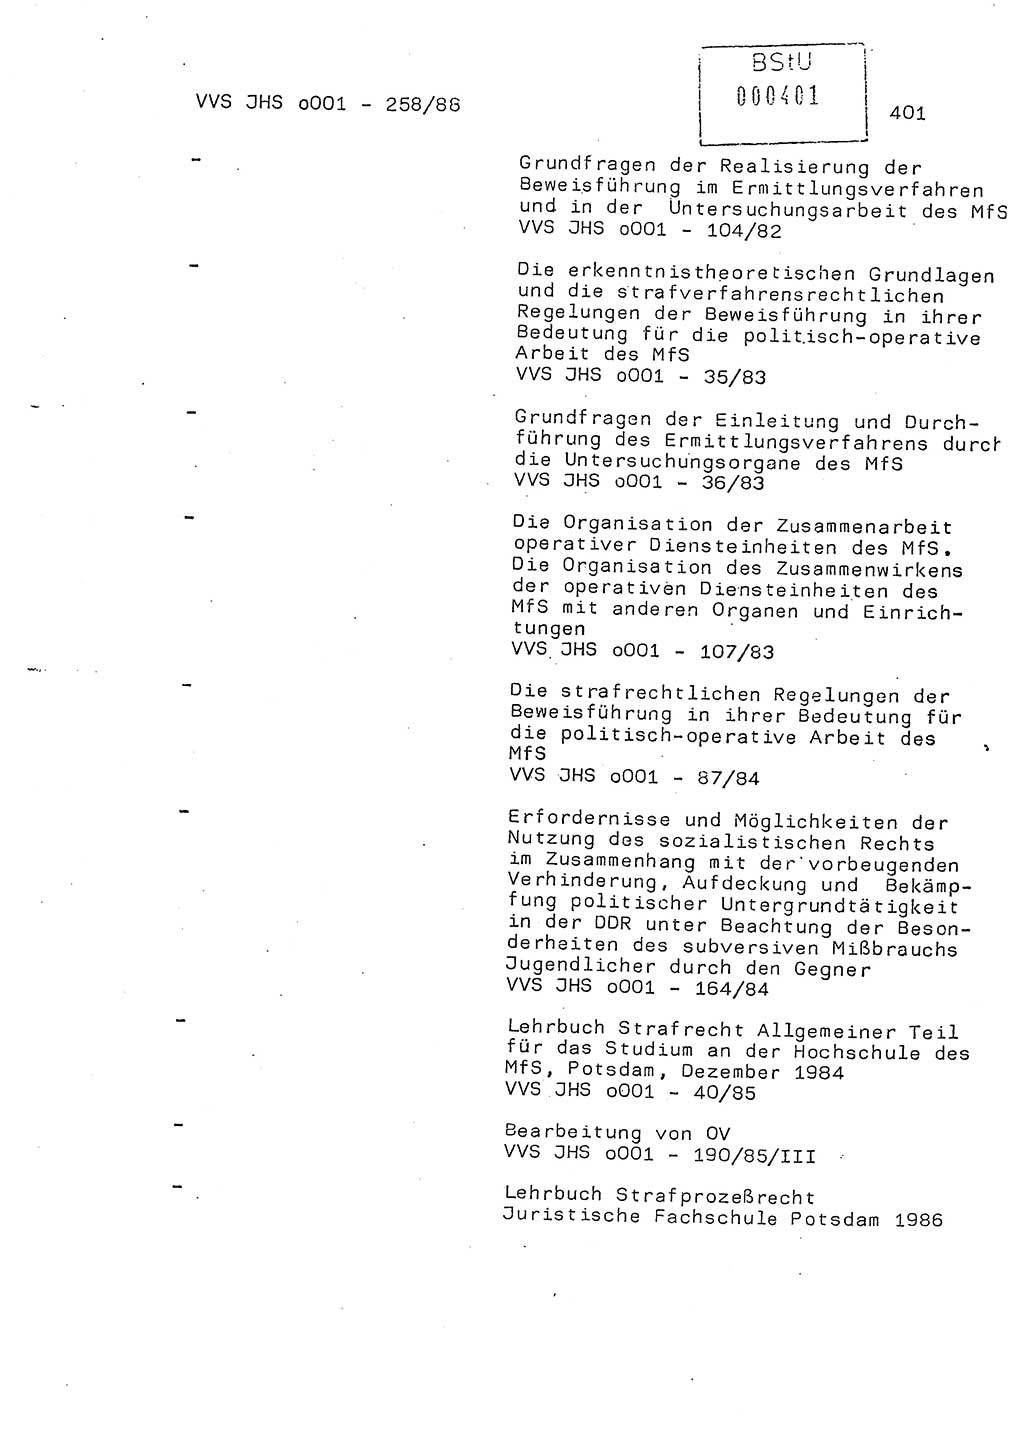 Dissertation, Oberleutnant Uwe Kärsten (JHS), Hauptmann Dr. Joachim Henkel (JHS), Oberstleutnant Werner Mählitz (Leiter der Abt. Ⅸ BV Rostock), Oberstleutnant Jürgen Tröge (HA Ⅸ/AKG), Oberstleutnant Winfried Ziegler (HA Ⅸ/9), Major Wolf-Rüdiger Wurzler (JHS), Ministerium für Staatssicherheit (MfS) [Deutsche Demokratische Republik (DDR)], Juristische Hochschule (JHS), Vertrauliche Verschlußsache (VVS) o001-258/88, Potsdam 1988, Seite 400 (Diss. MfS DDR JHS VVS o001-258/88 1988, S. 400)